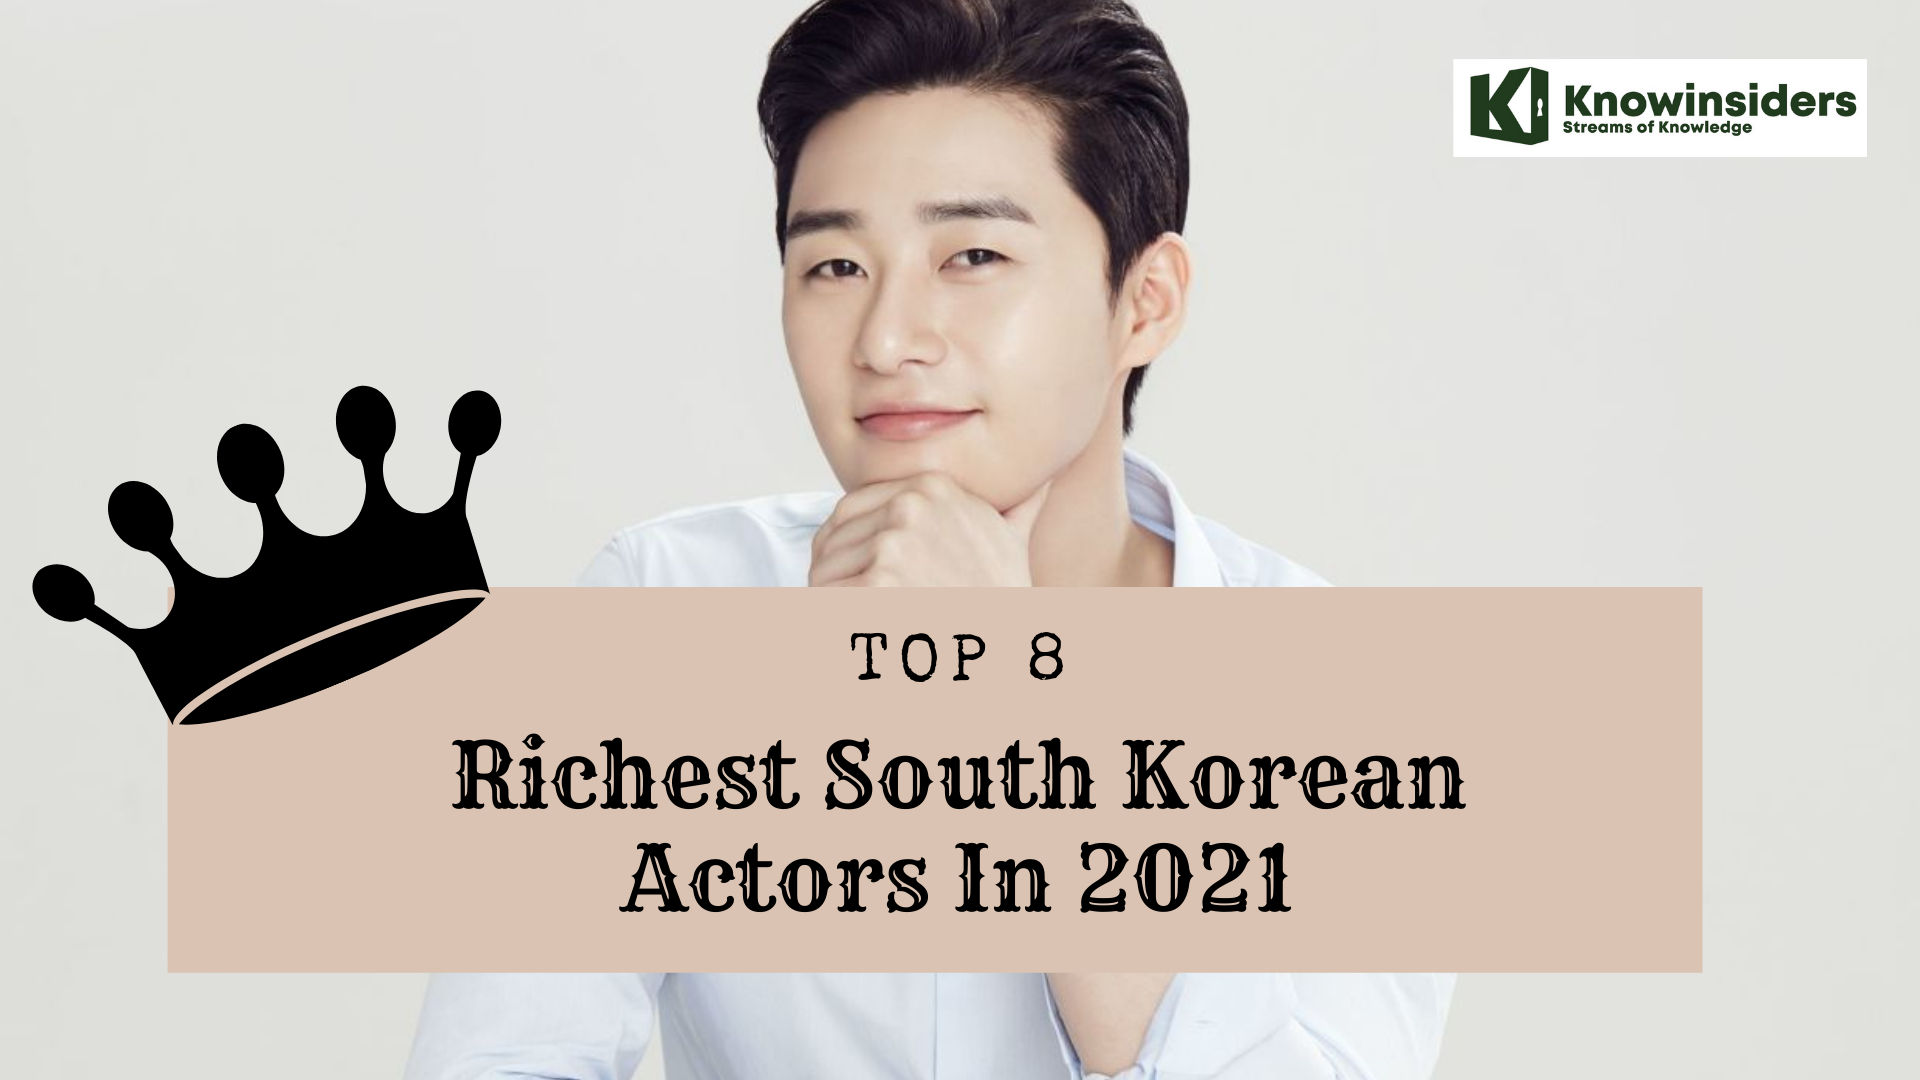 Top 8 Richest South Korean Actors